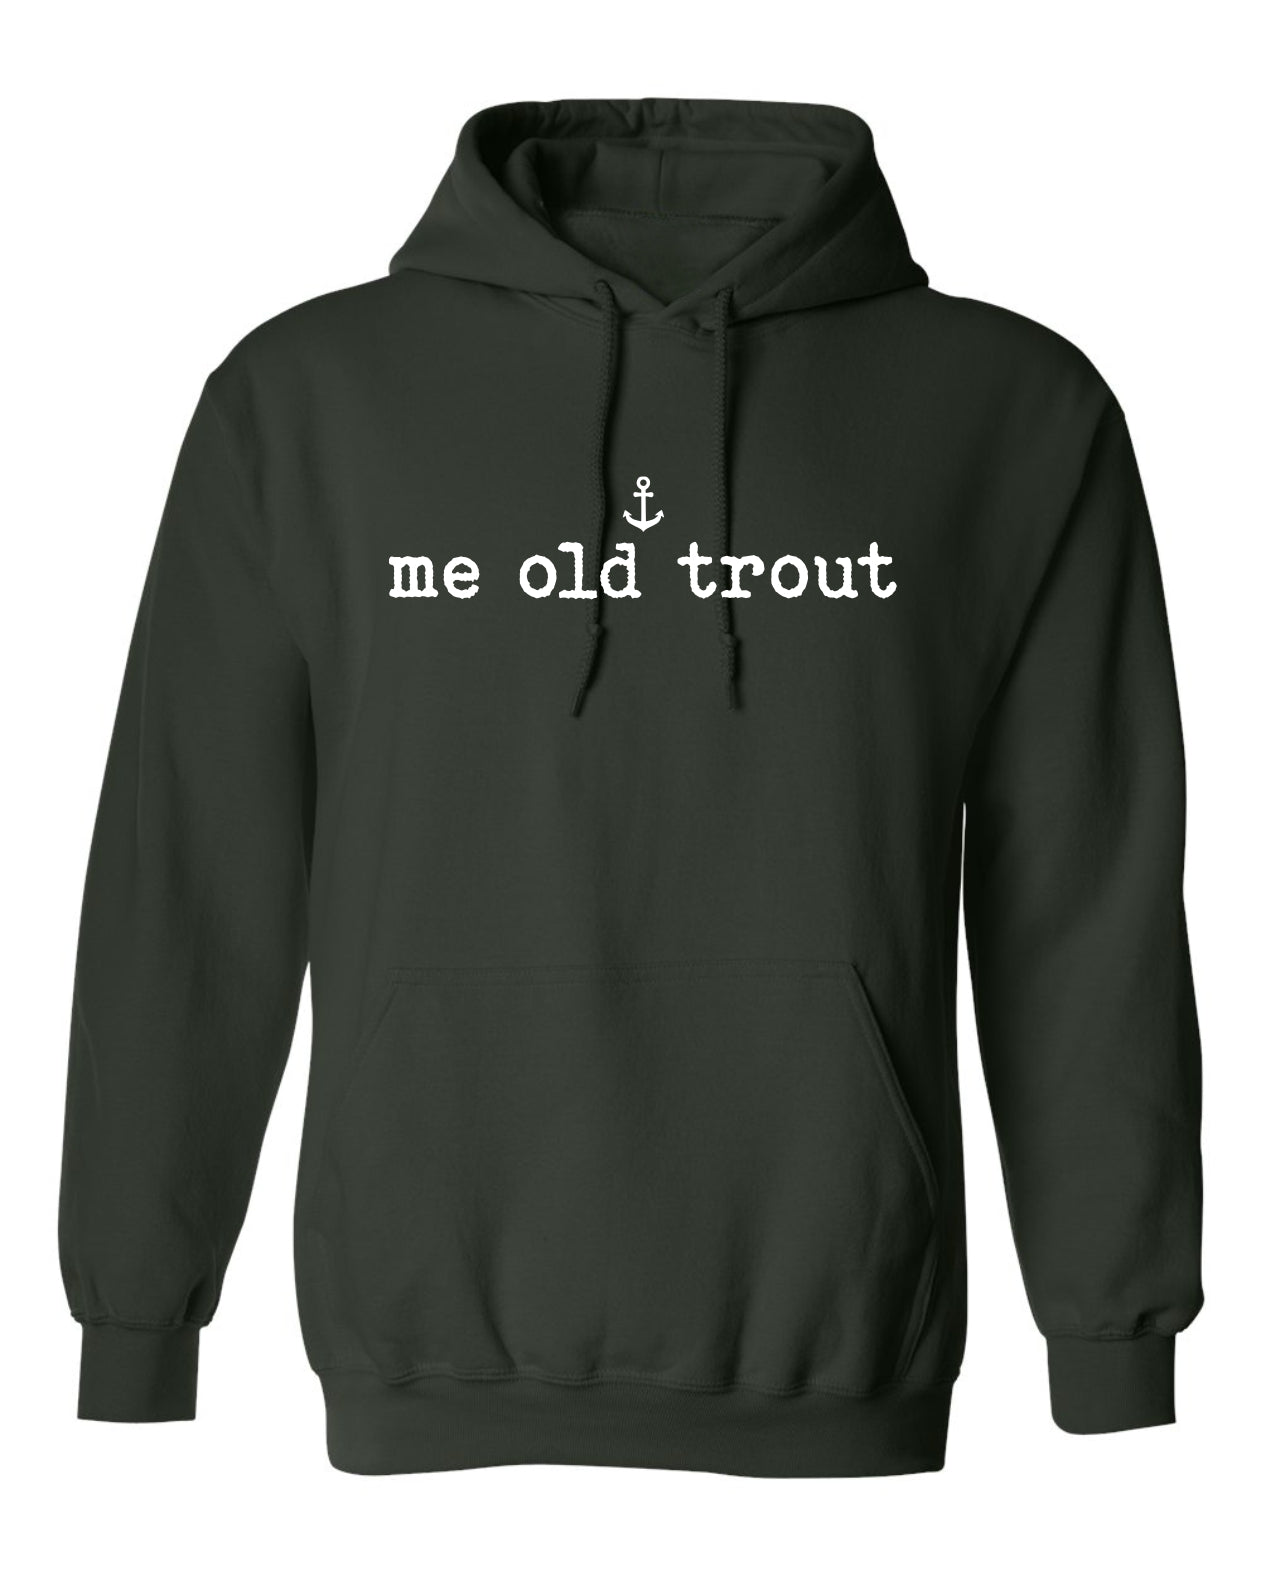 "Me Old Trout" Unisex Hoodie